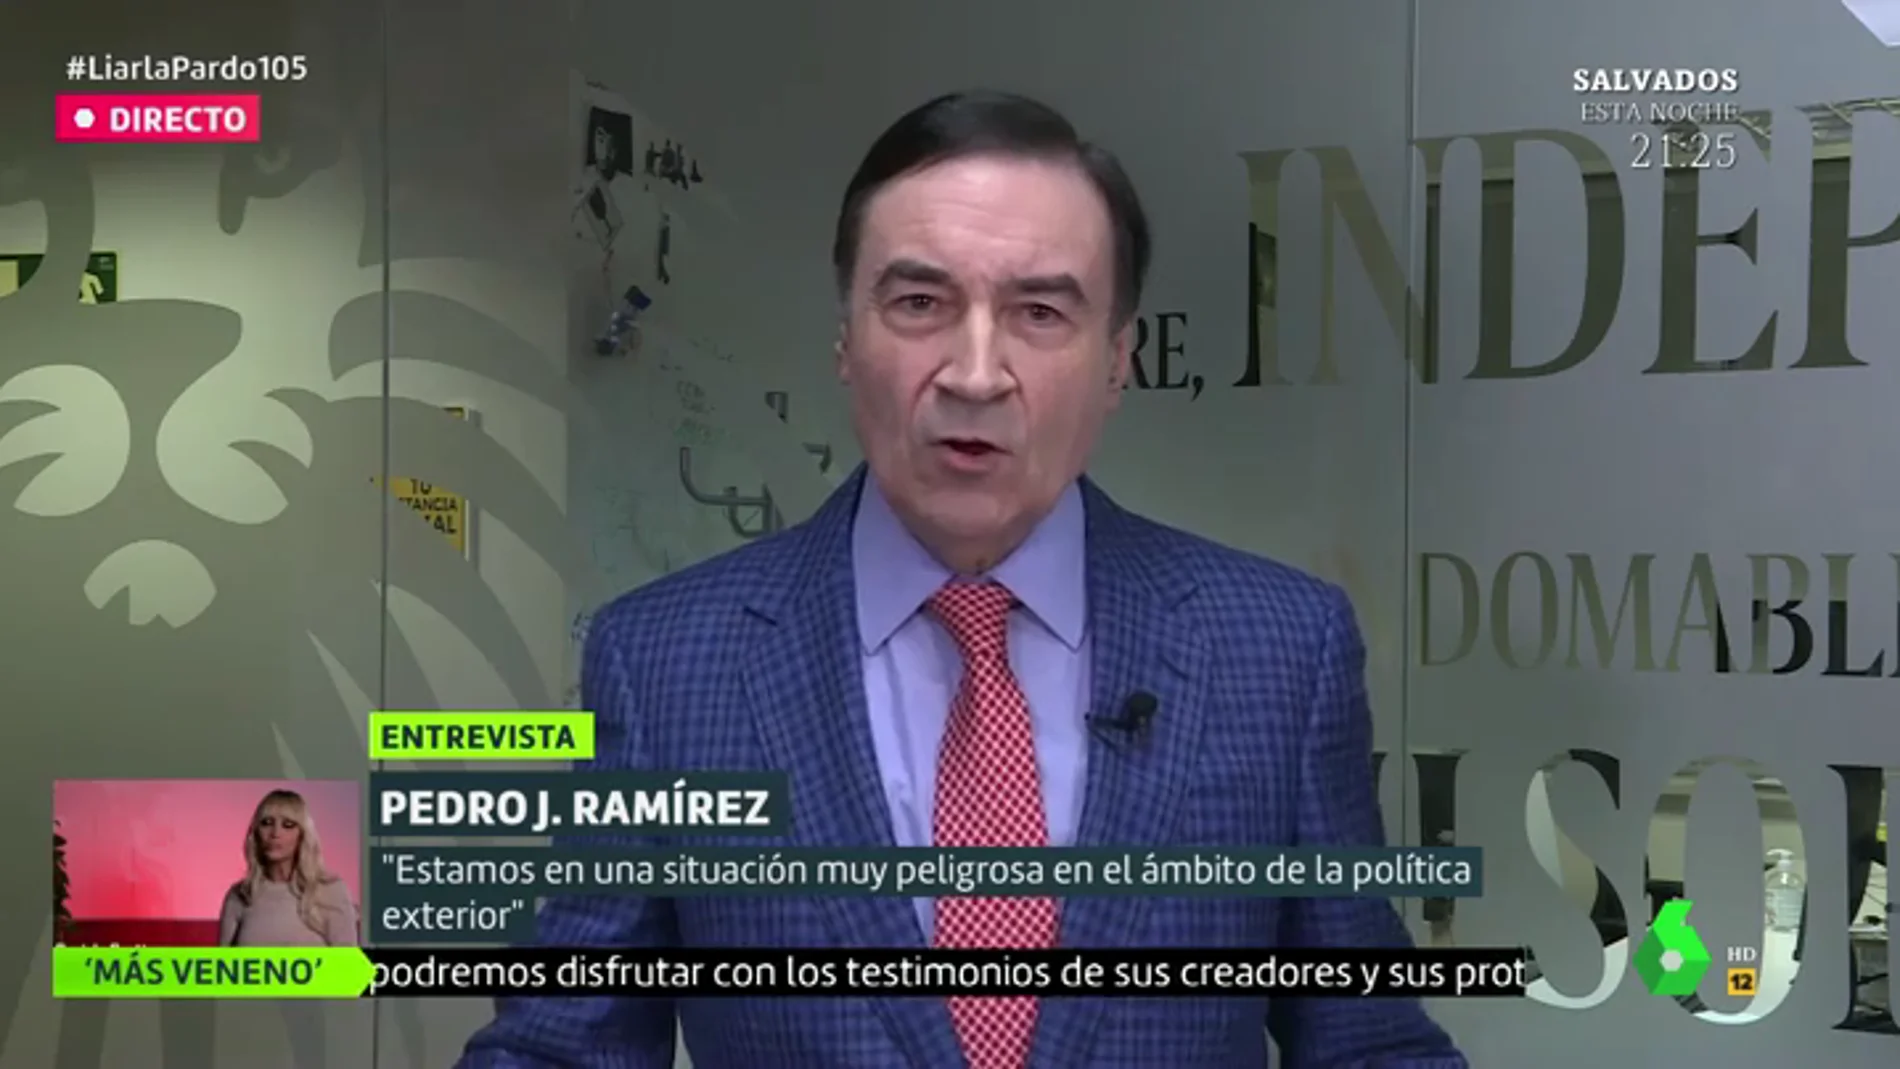  Pedro J. Ramírez: "Podemos no quiere proteger a los desfavorecidos, quiere hacer daño a quien se abre camino con su mérito"